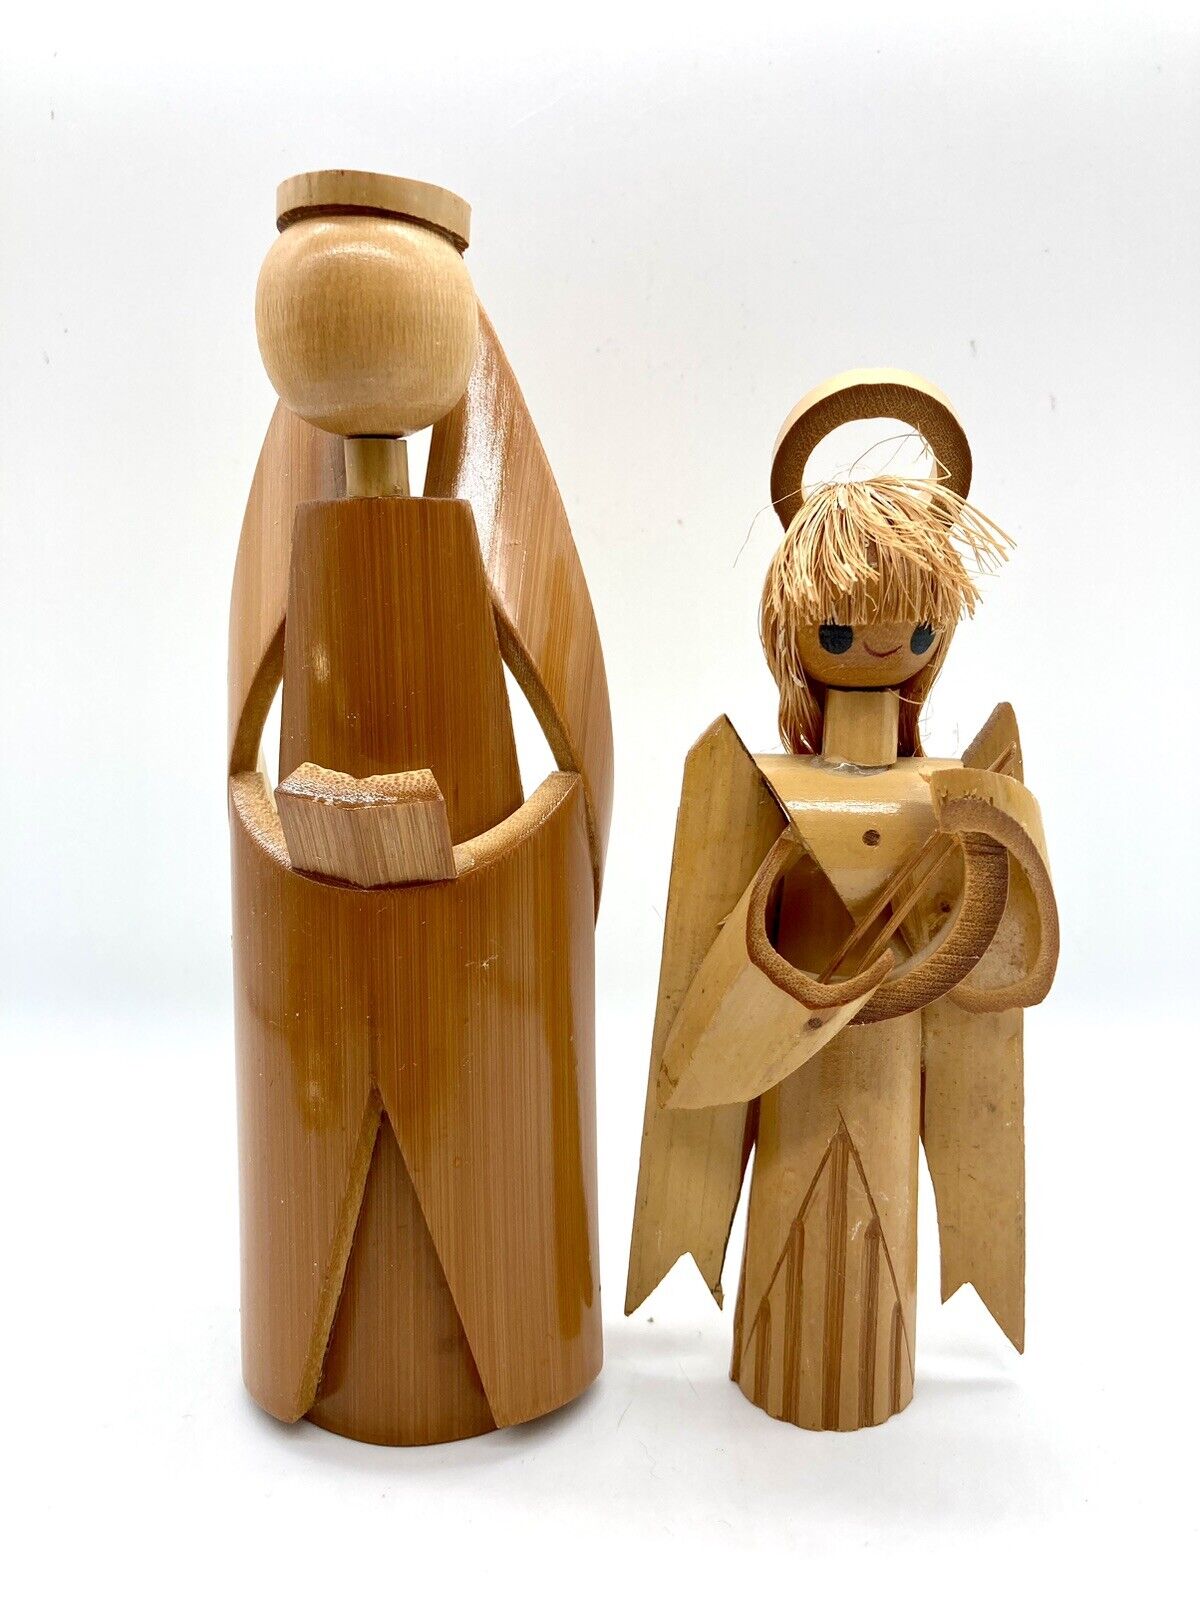 2 Vintage Wood Split Bamboo Angel Figurines Singing Choir Angels Harp Musician